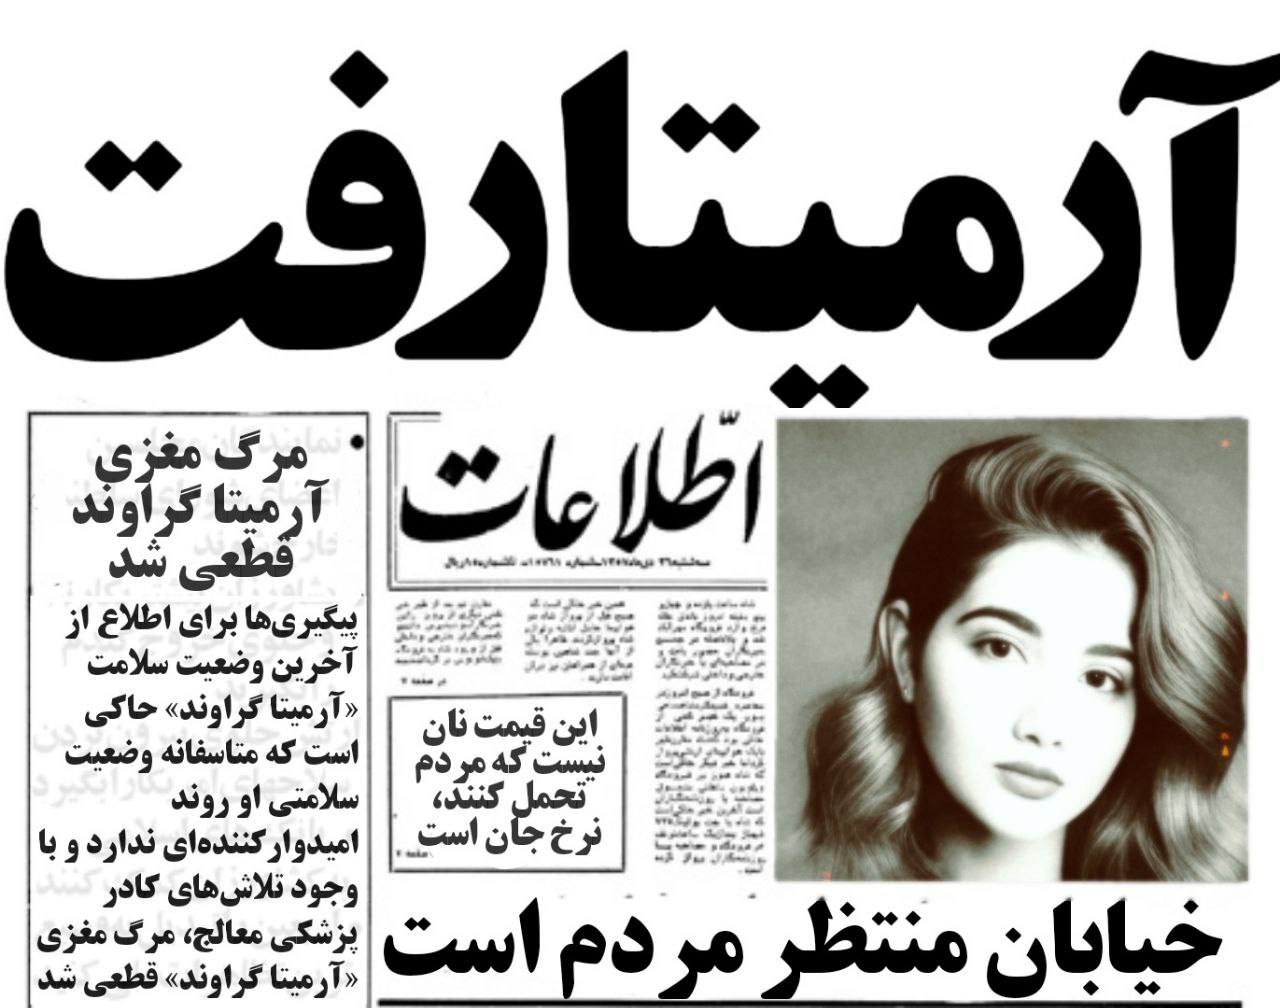 رسانه های حکومتی ایران:آرمیتا گراوند دختر نوجوان «مرگ مغزی» شد